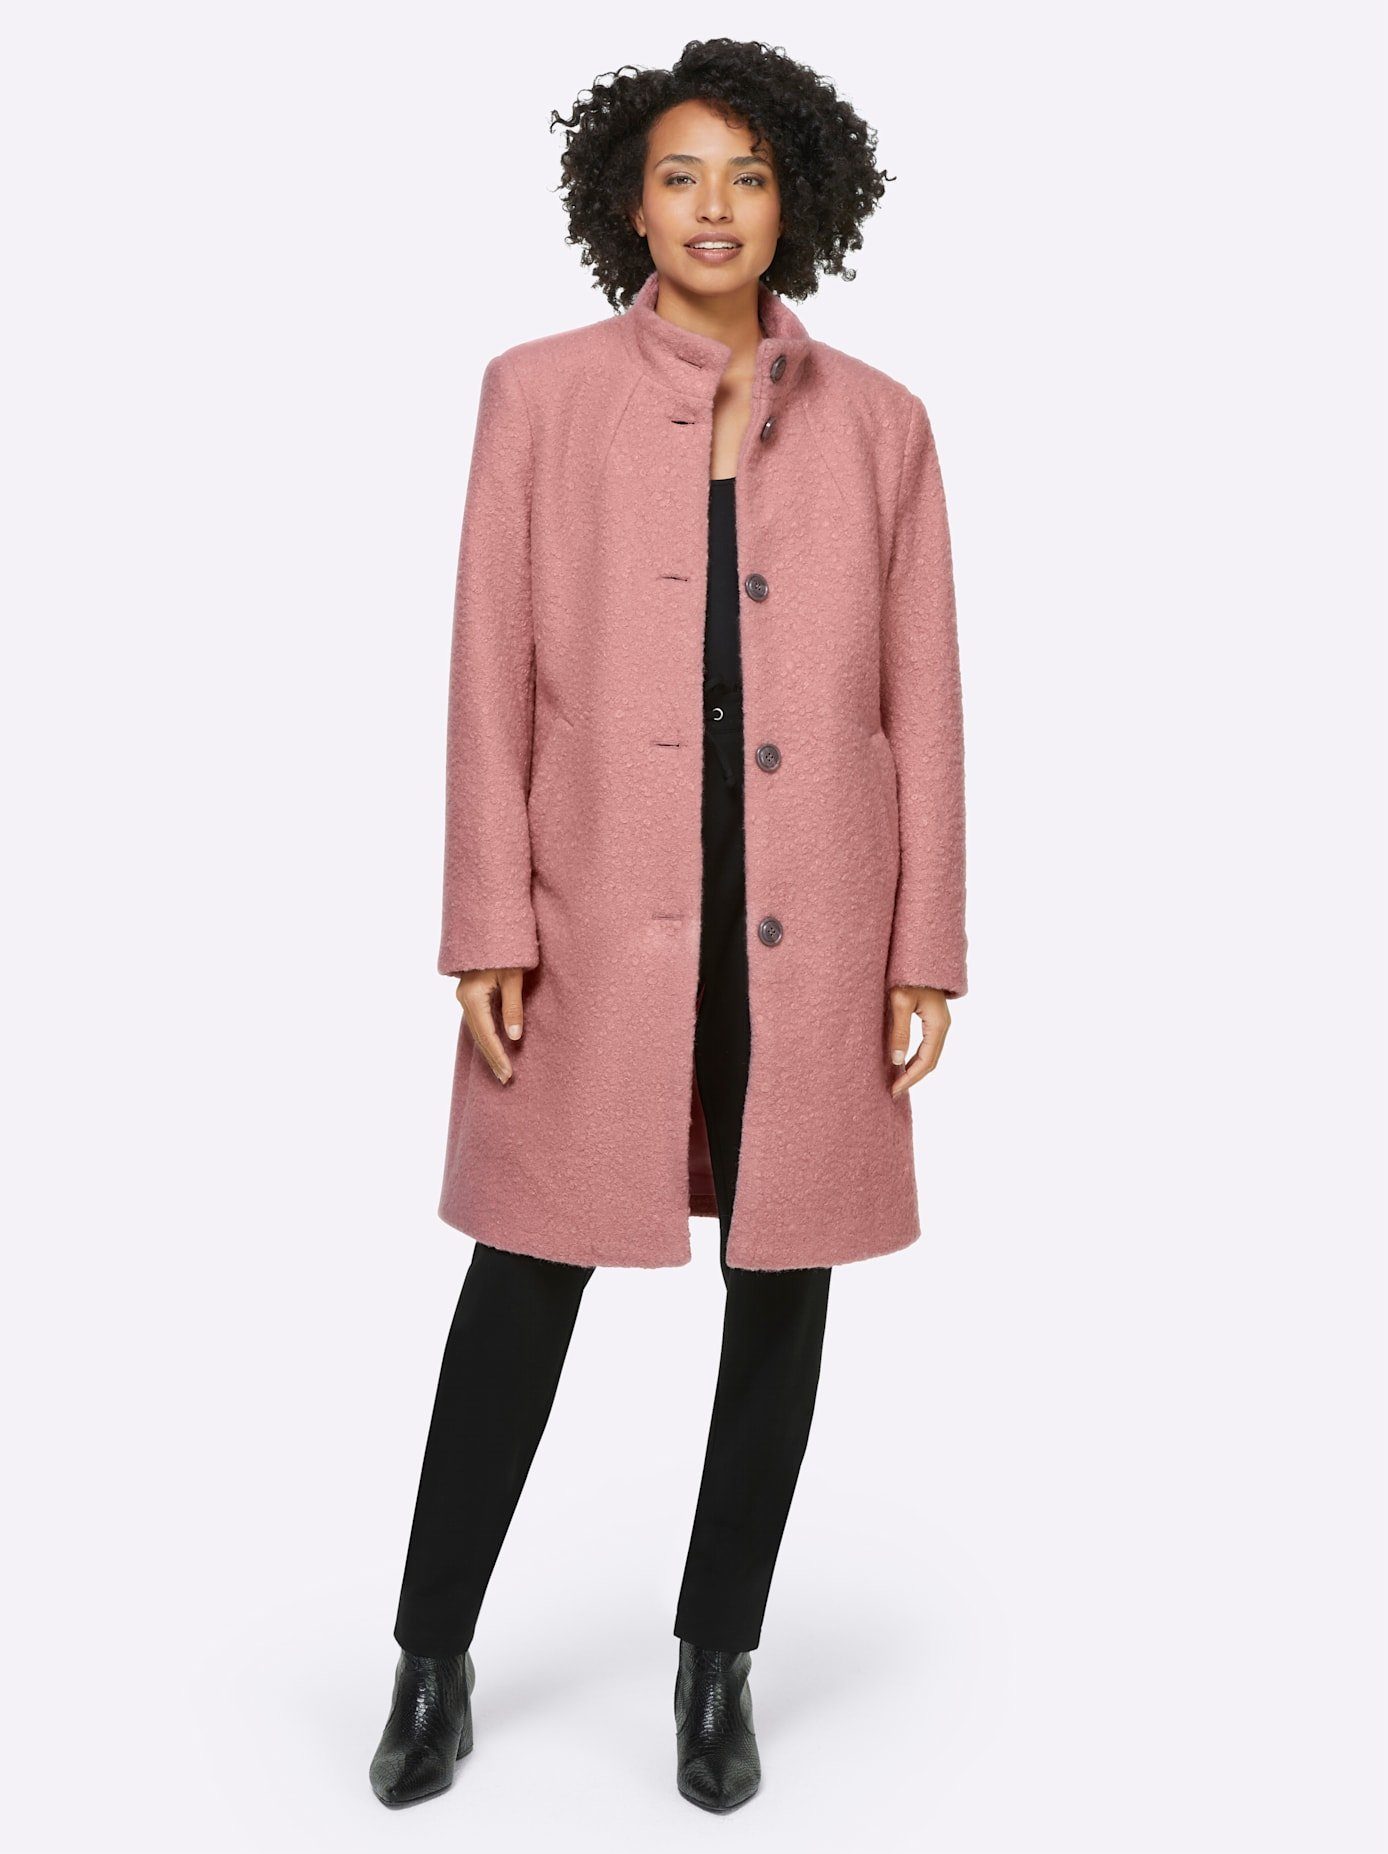 Rosa Kurzmäntel für Damen kaufen » Pinke Blazermäntel | OTTO